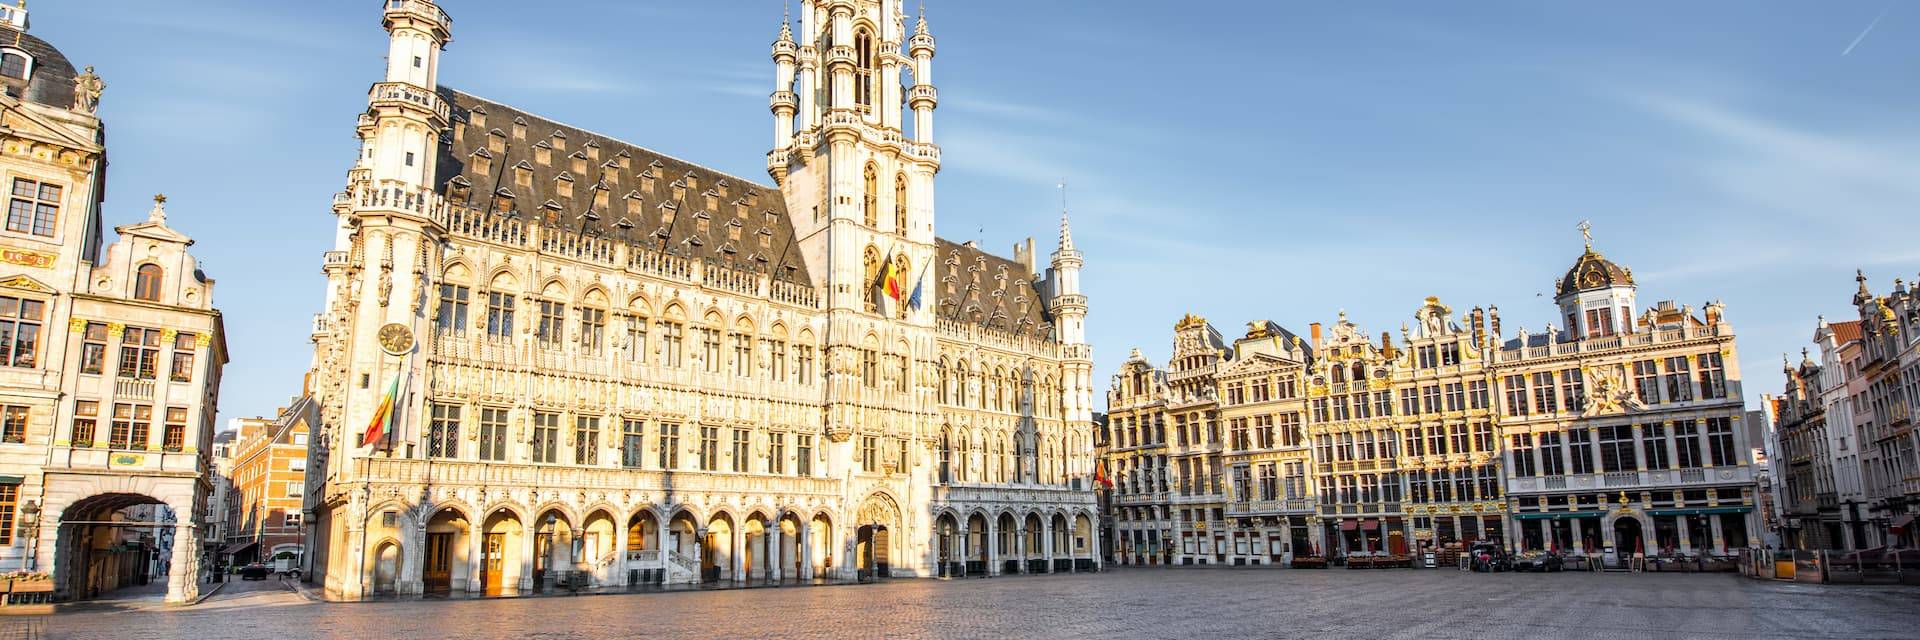 free walking tours brussels belgium